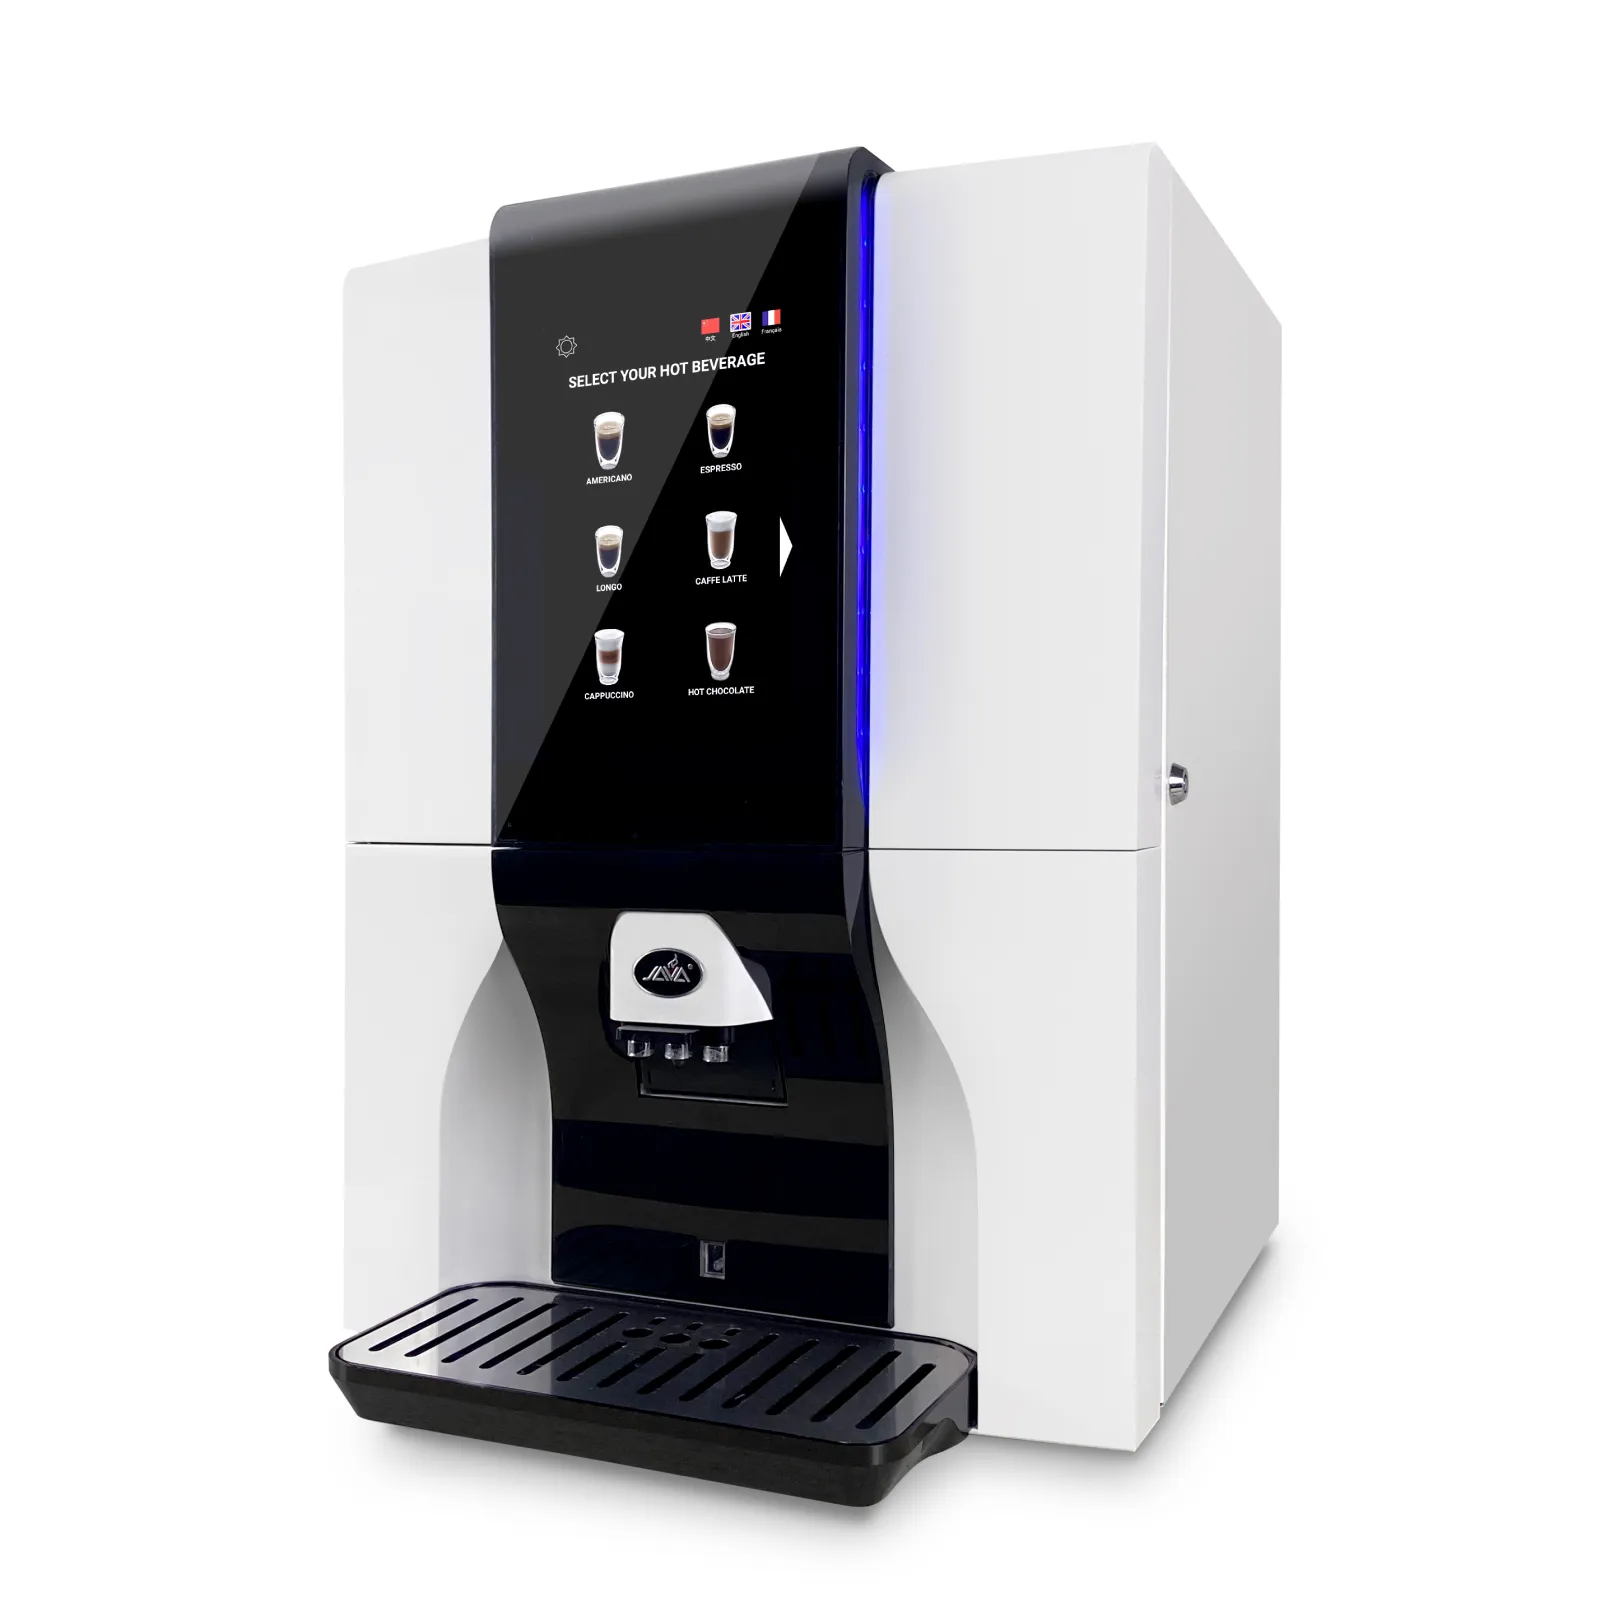 ماكينة كابتشينو ذكية، ماكينة ذكية أوتوماتيكية بالكامل لصنع قهوة الإسبرسو والتحميص